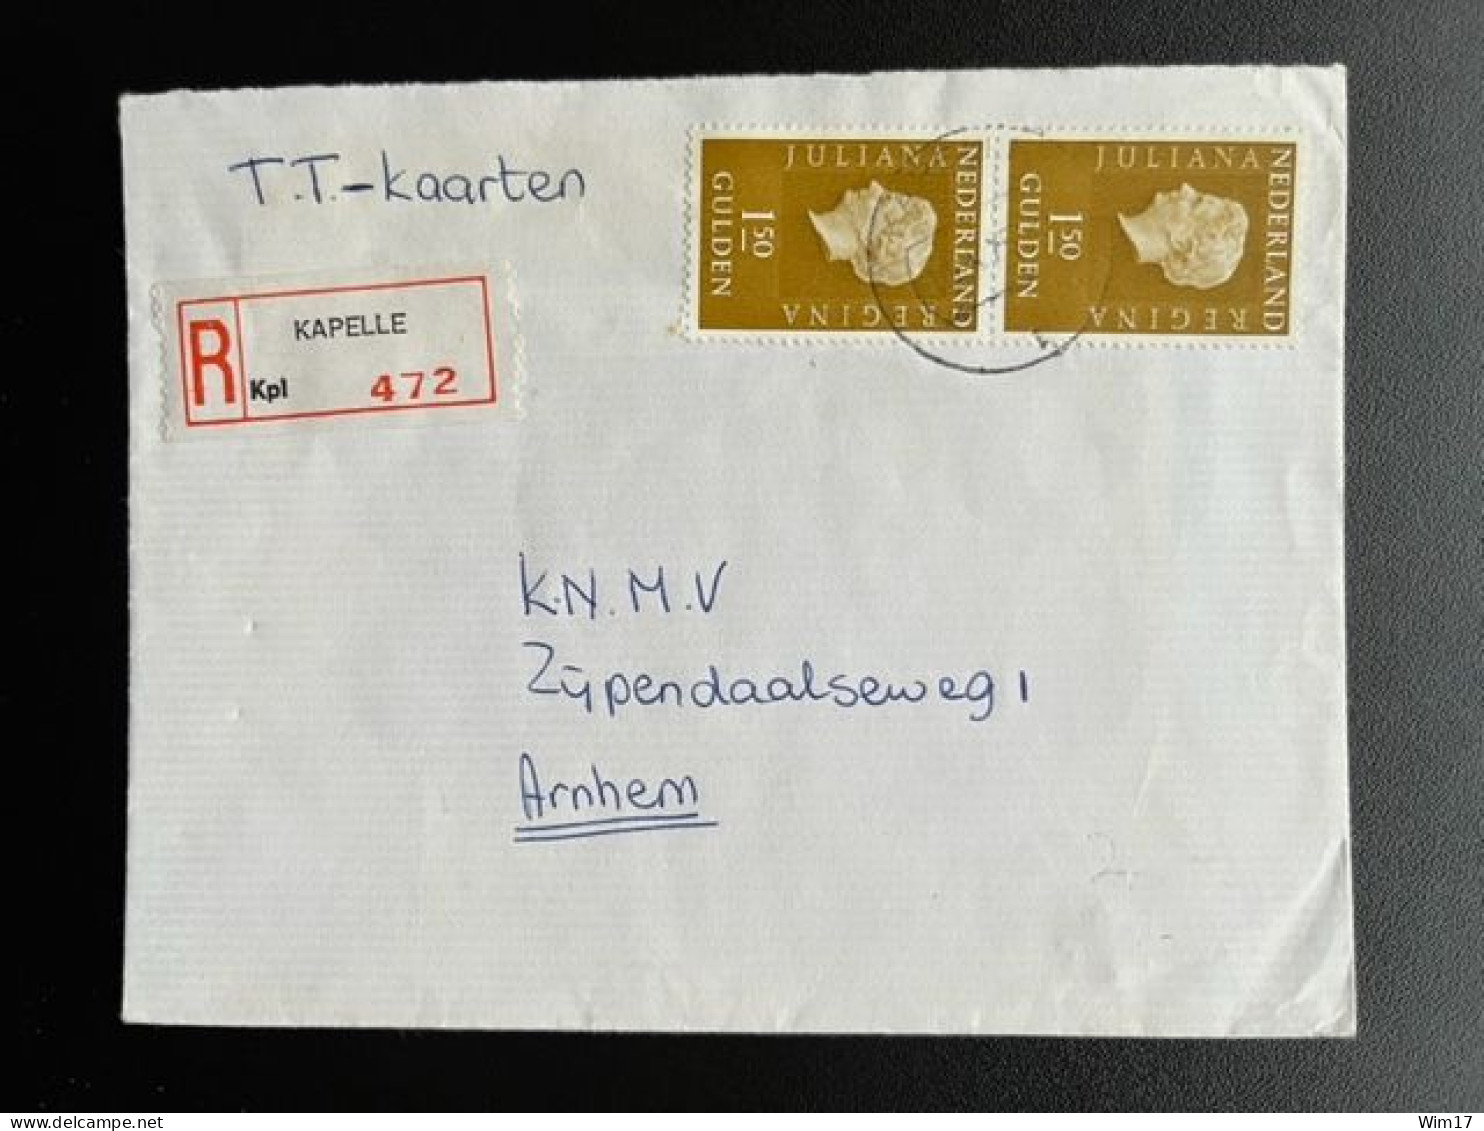 NETHERLANDS 1975 REGISTERED LETTER KAPELLE TO ARNHEM 16-02-1975 NEDERLAND AANGETEKEND - Covers & Documents